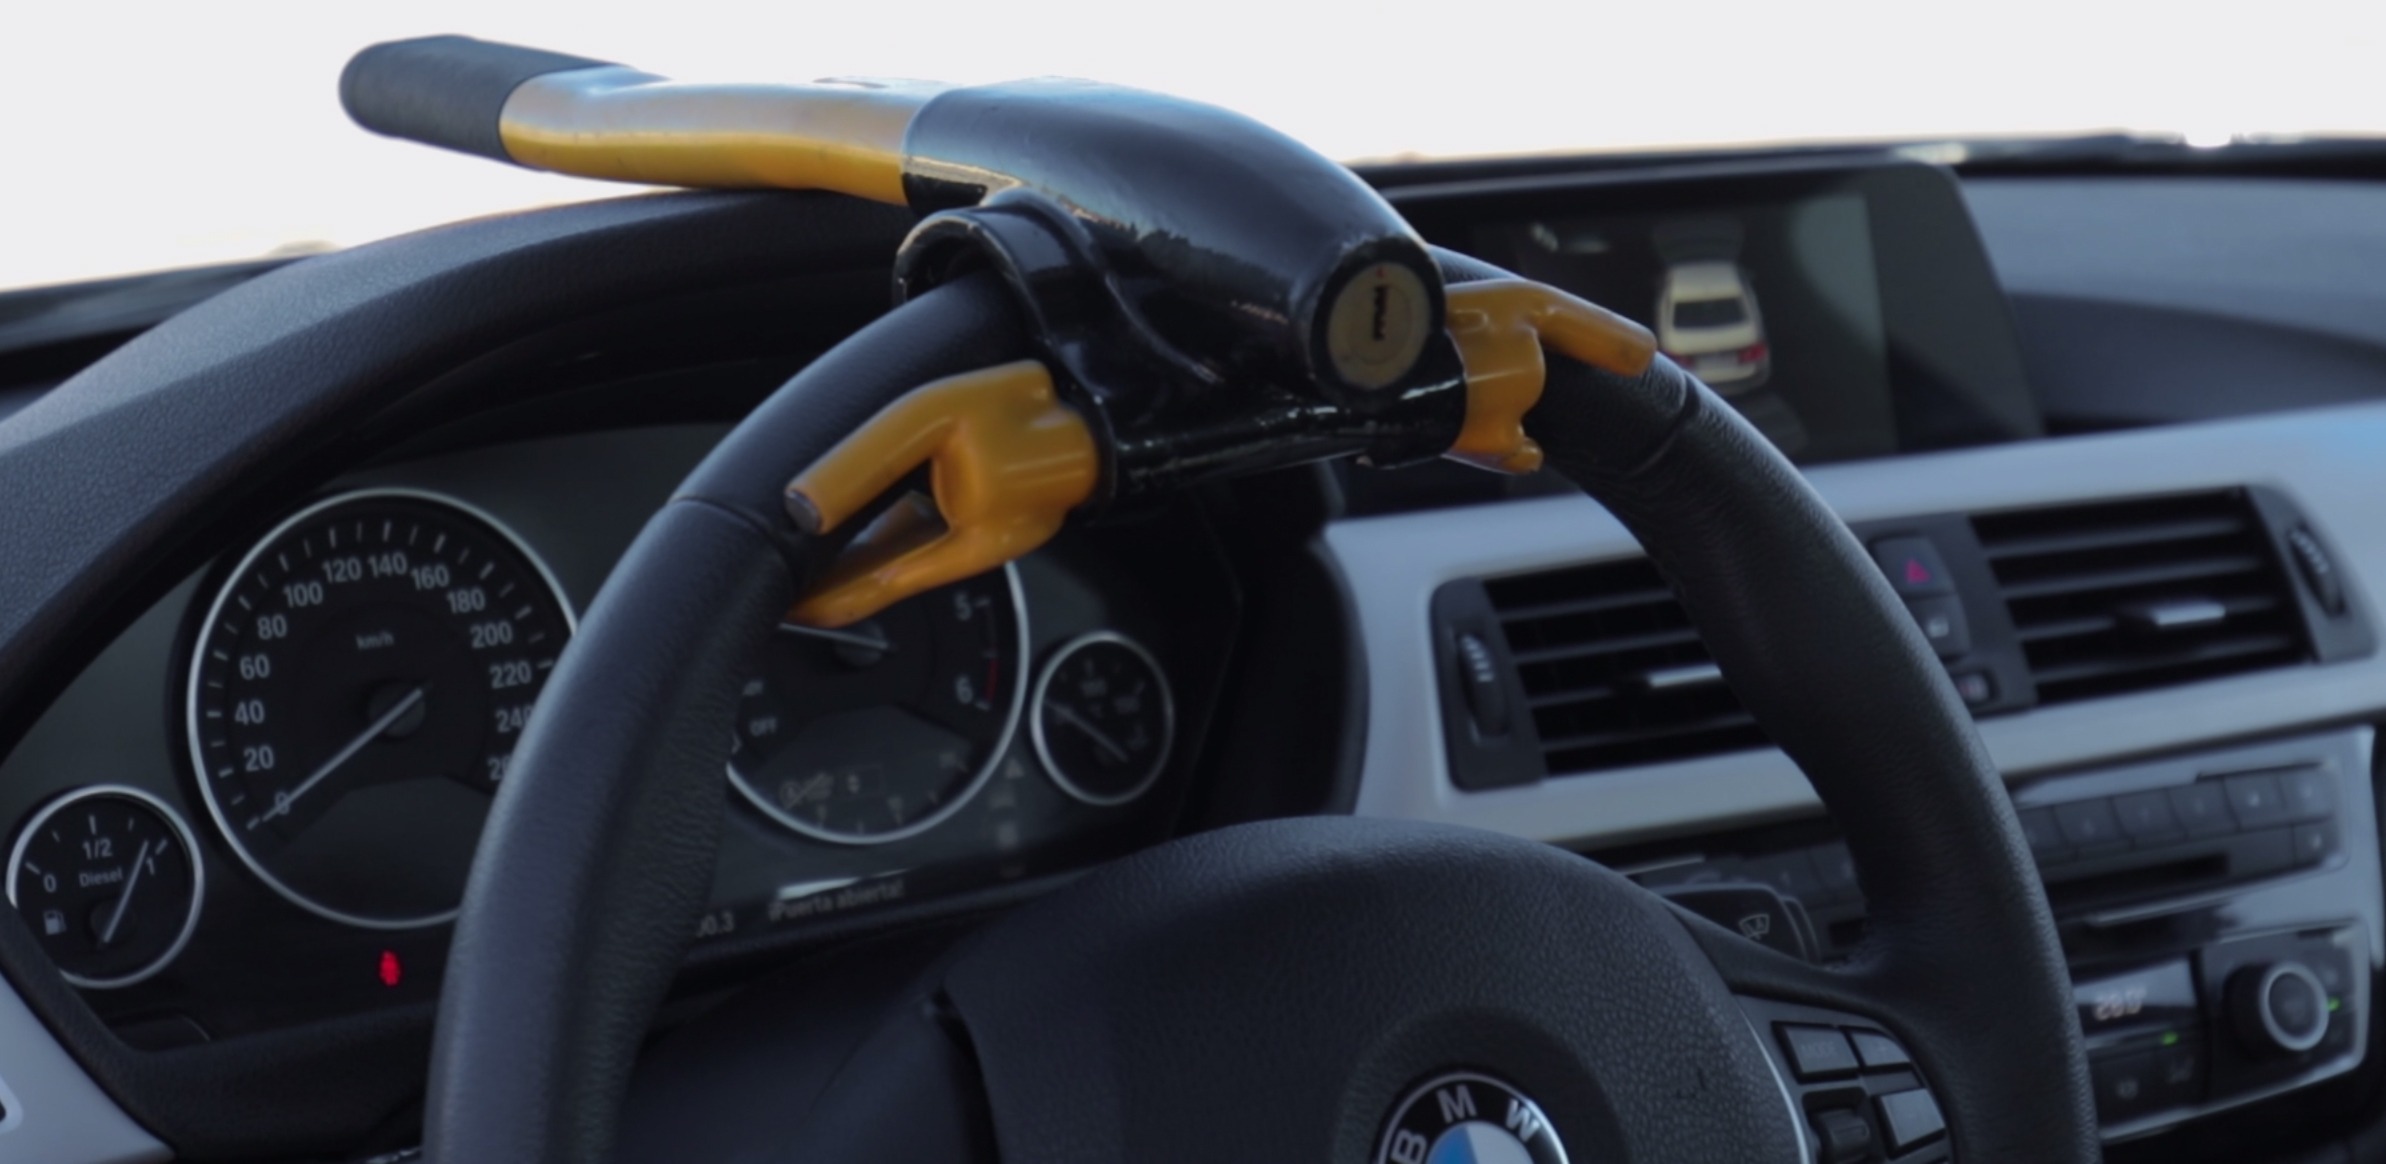 Los 5 sistemas antirrobo que pondrán tu coche a salvo- Clicars Blog